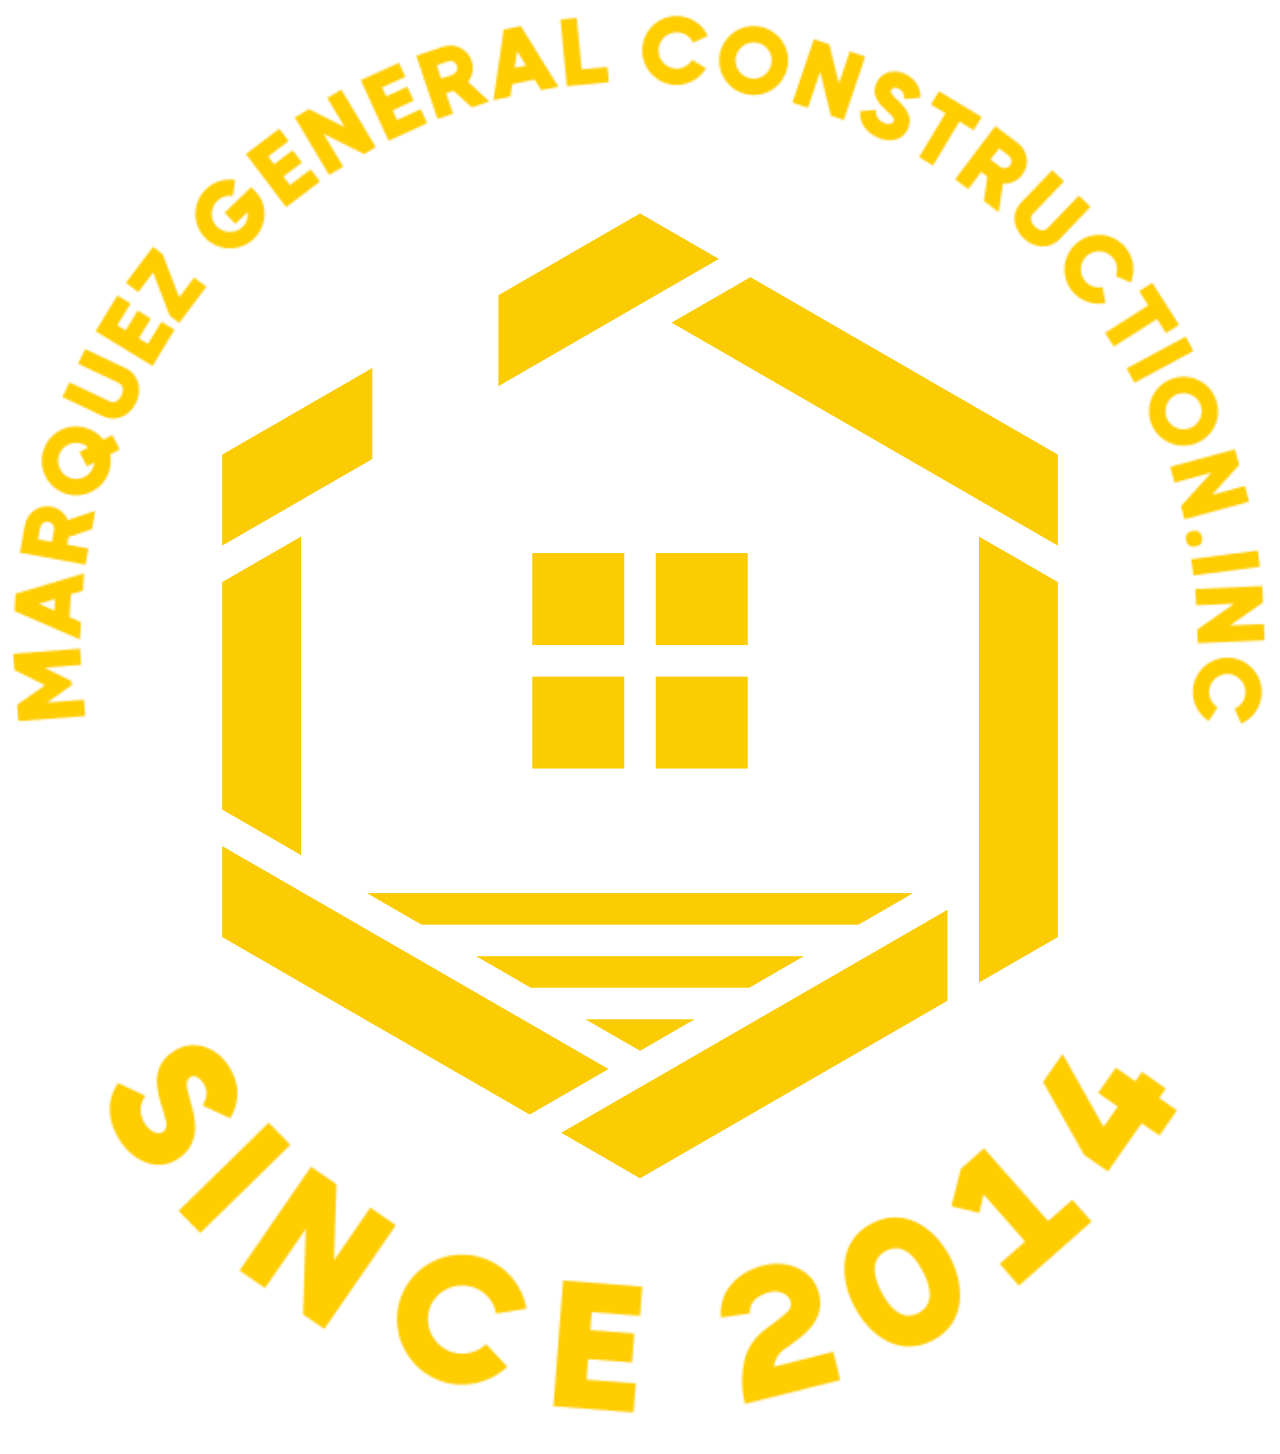 Marquez general construction.inc's web page